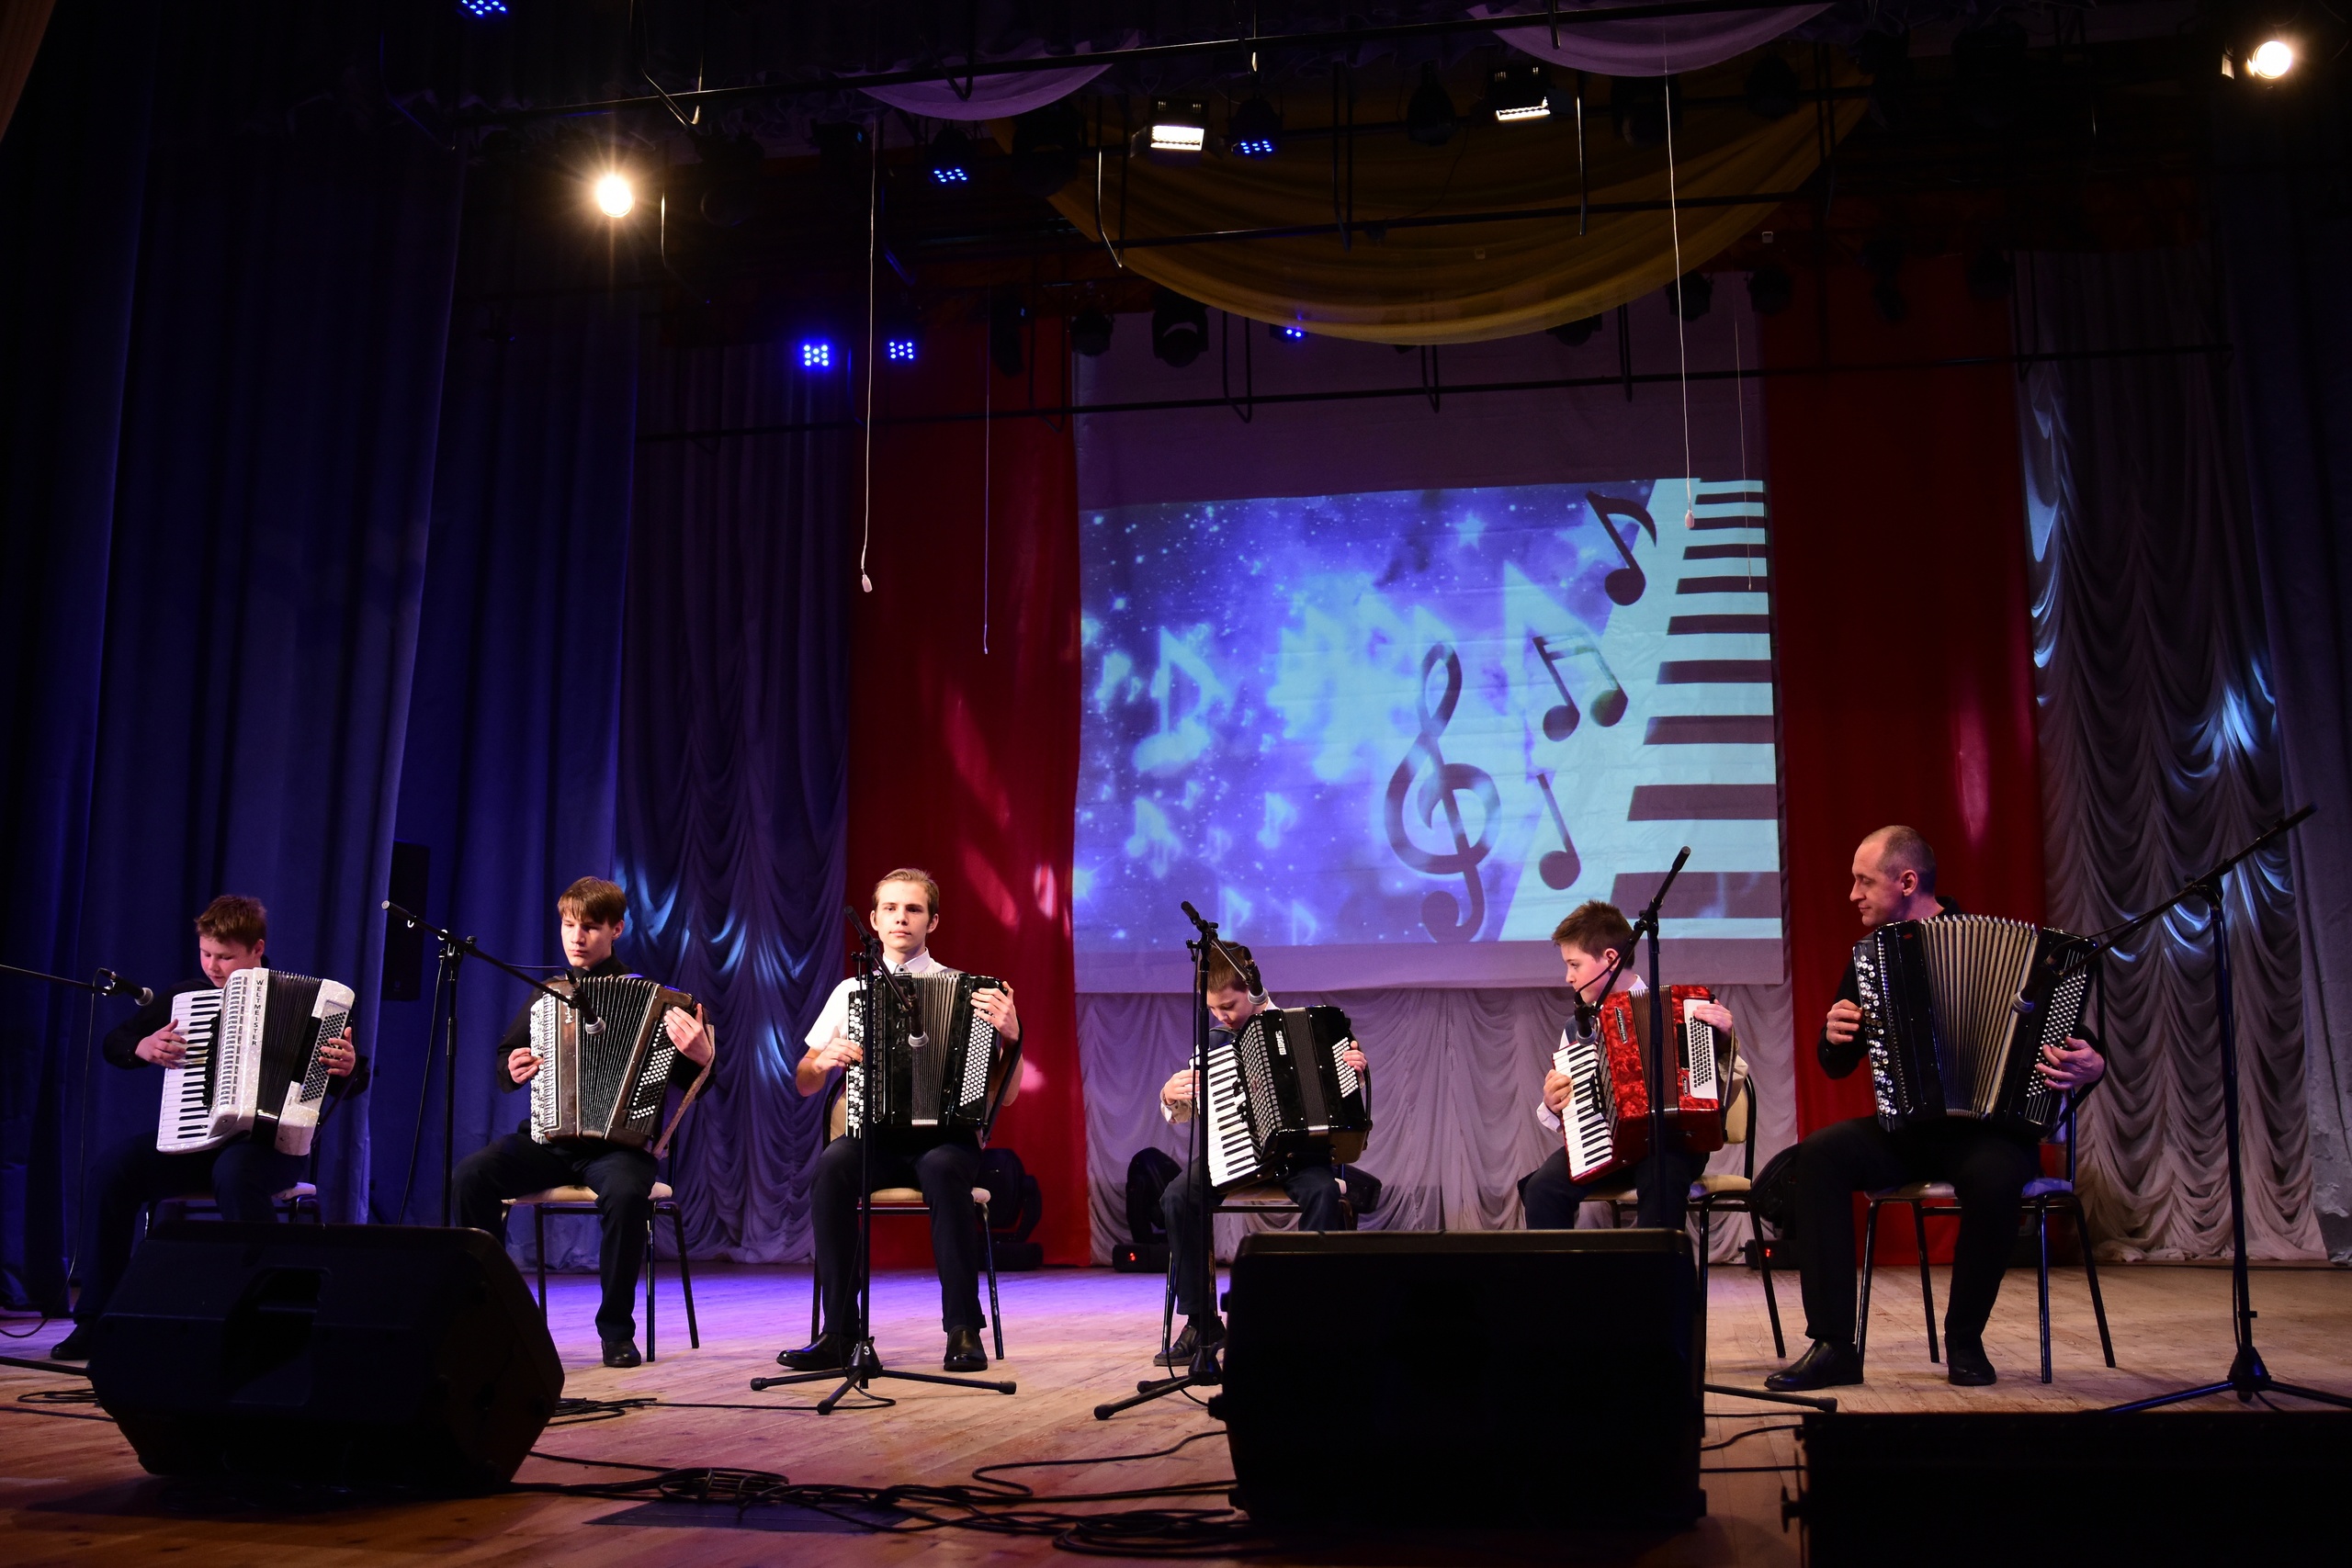 Детская школа искусств города Короча реализовала проект «К вам идет концертный зал!», который в 2022 году получил финансовую поддержку Президентского фонда культурных инициатив.